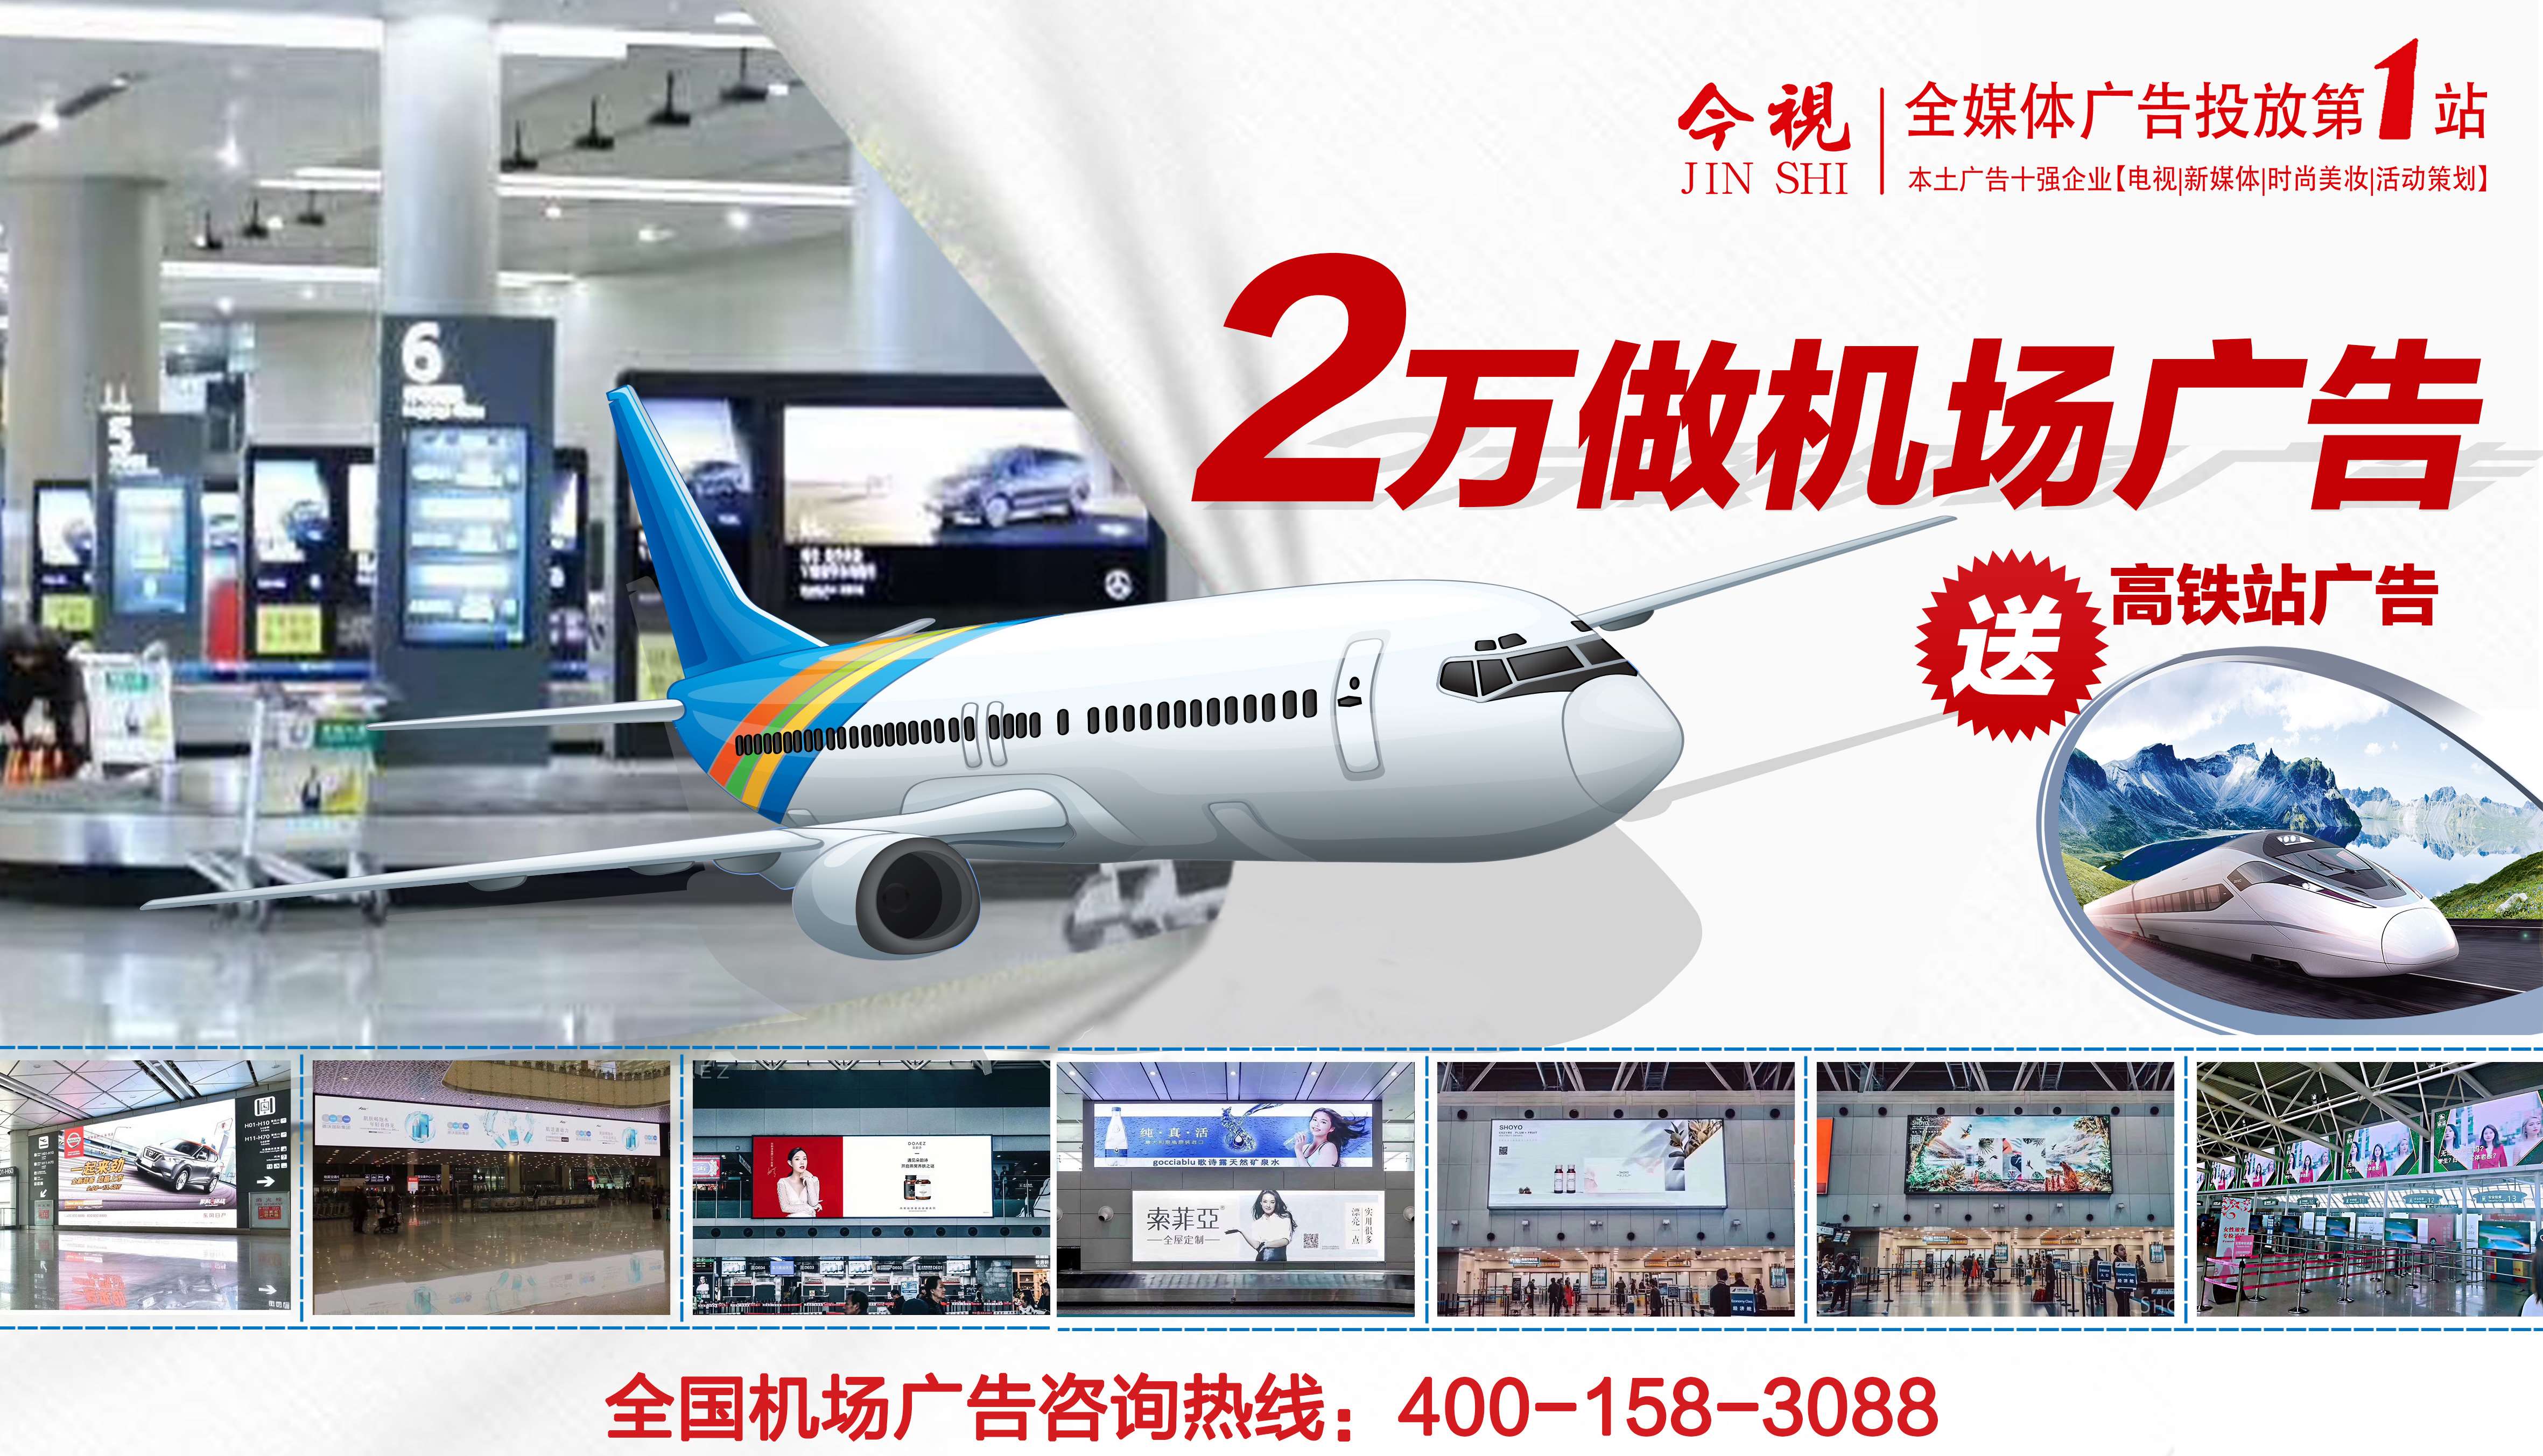 投放西藏机场媒体广告、机票广告、登机牌广告、飞机广告就选广东今视传媒，广东今视广告投放热线：400-158-3088.